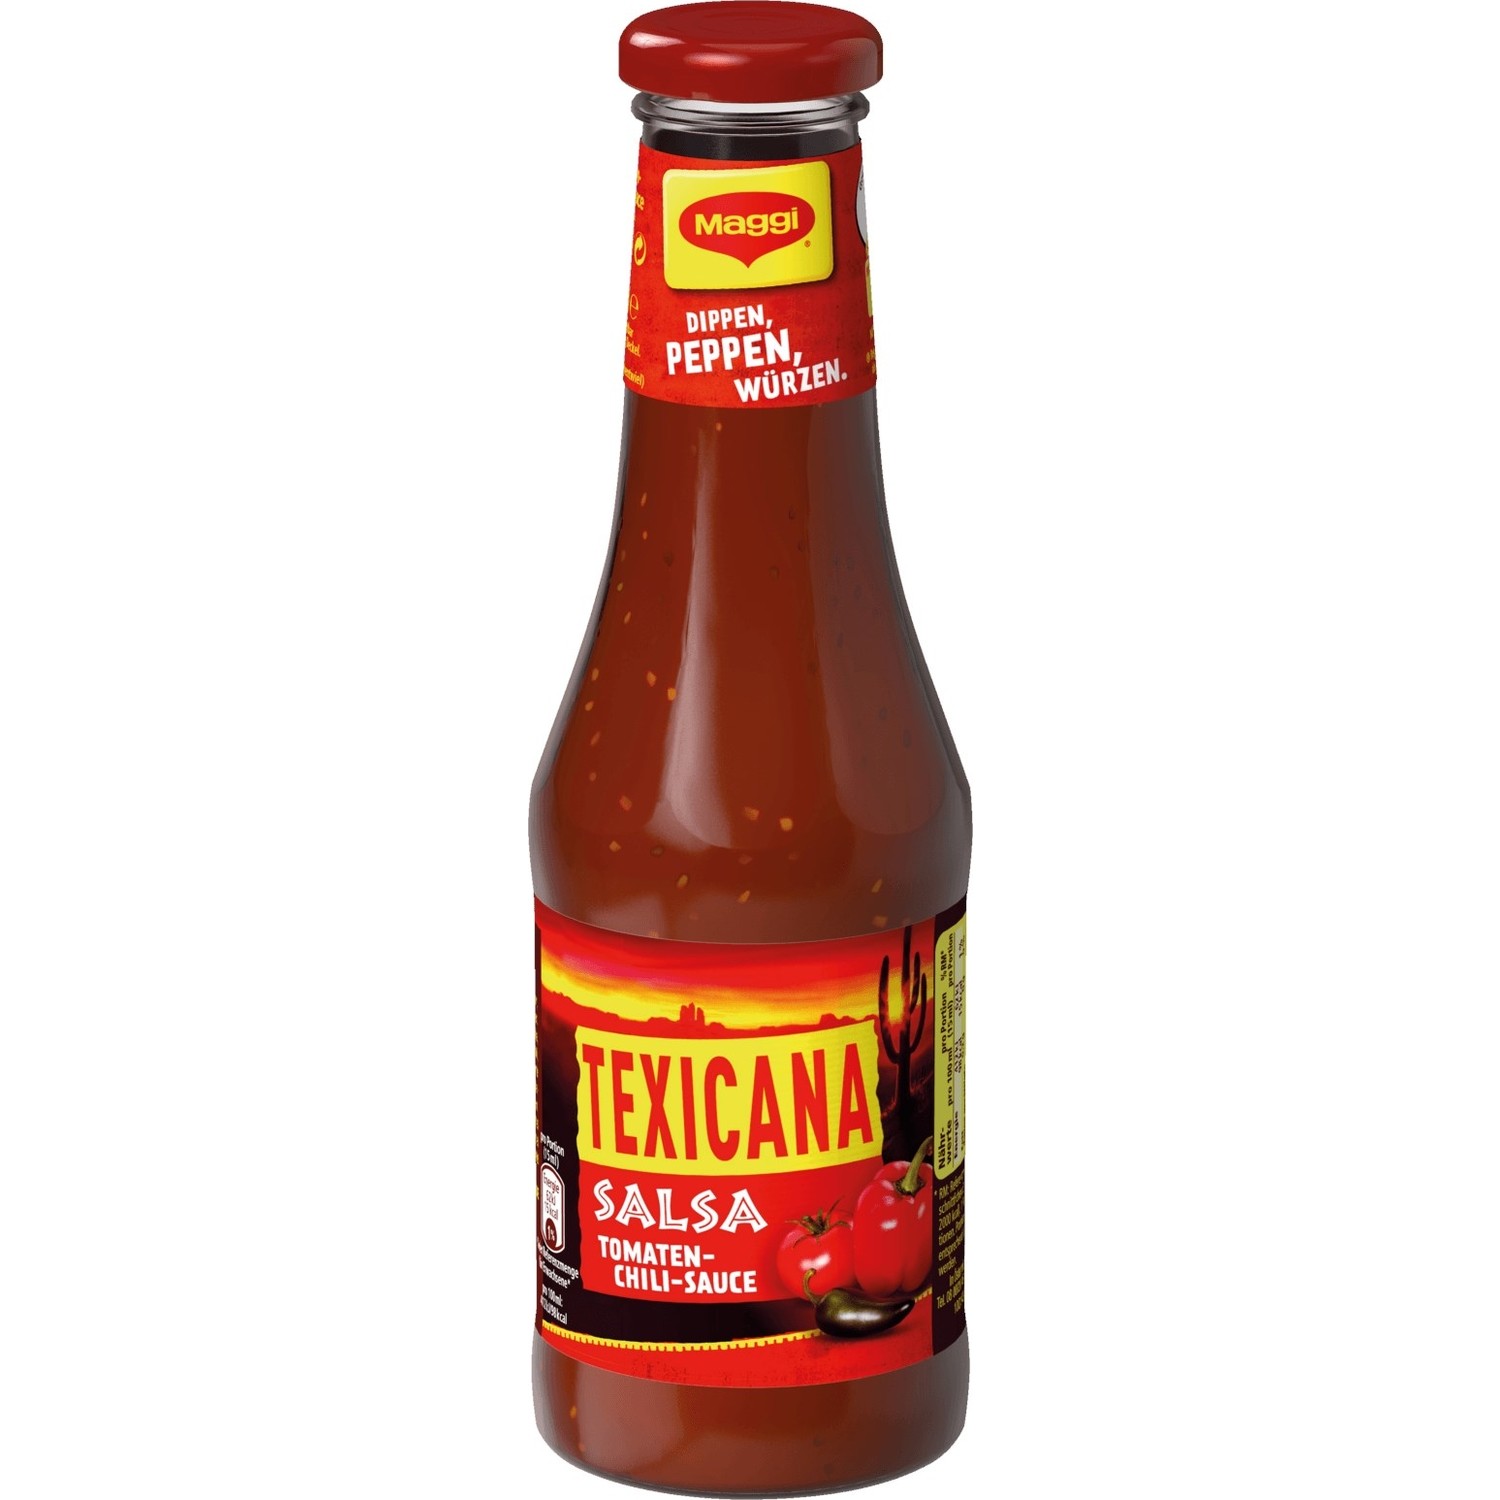 Maggı Texicana Salsa Tomaten-Chili-Sauce 500 ml Fiyatı